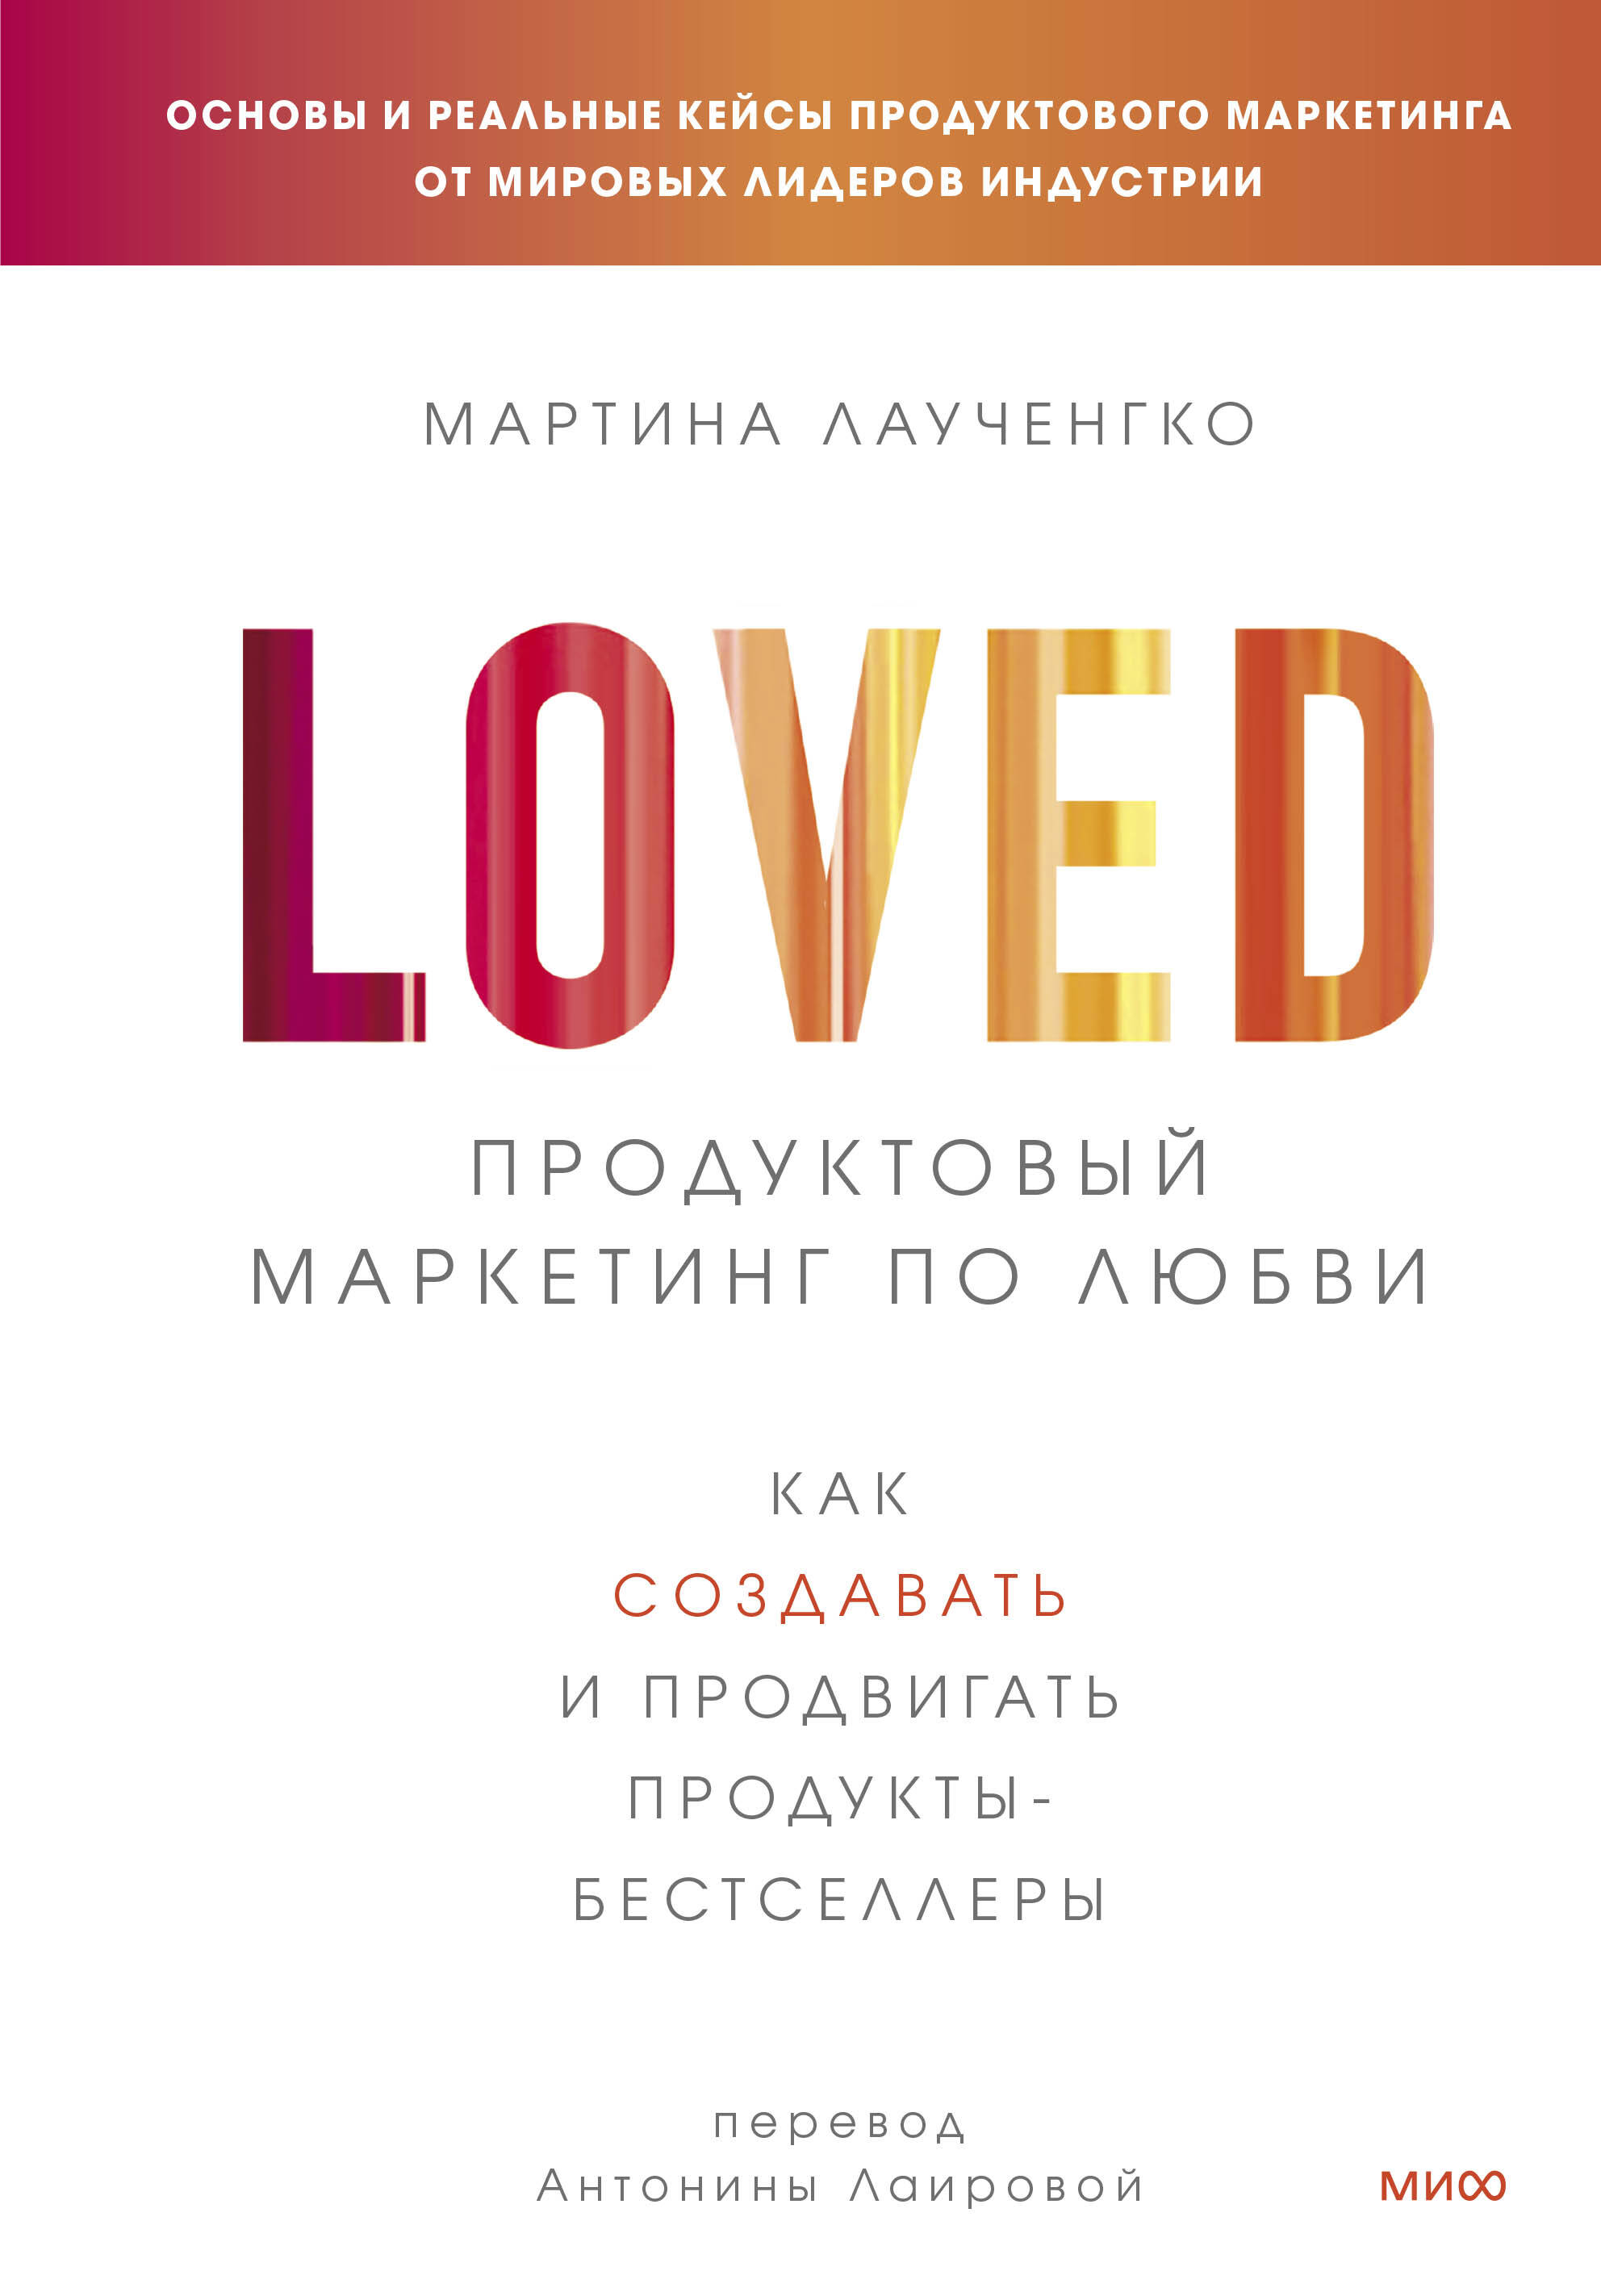 Лаученгко Мартина - Продуктовый маркетинг по любви. Как создавать и продвигать продукты-бестселлеры